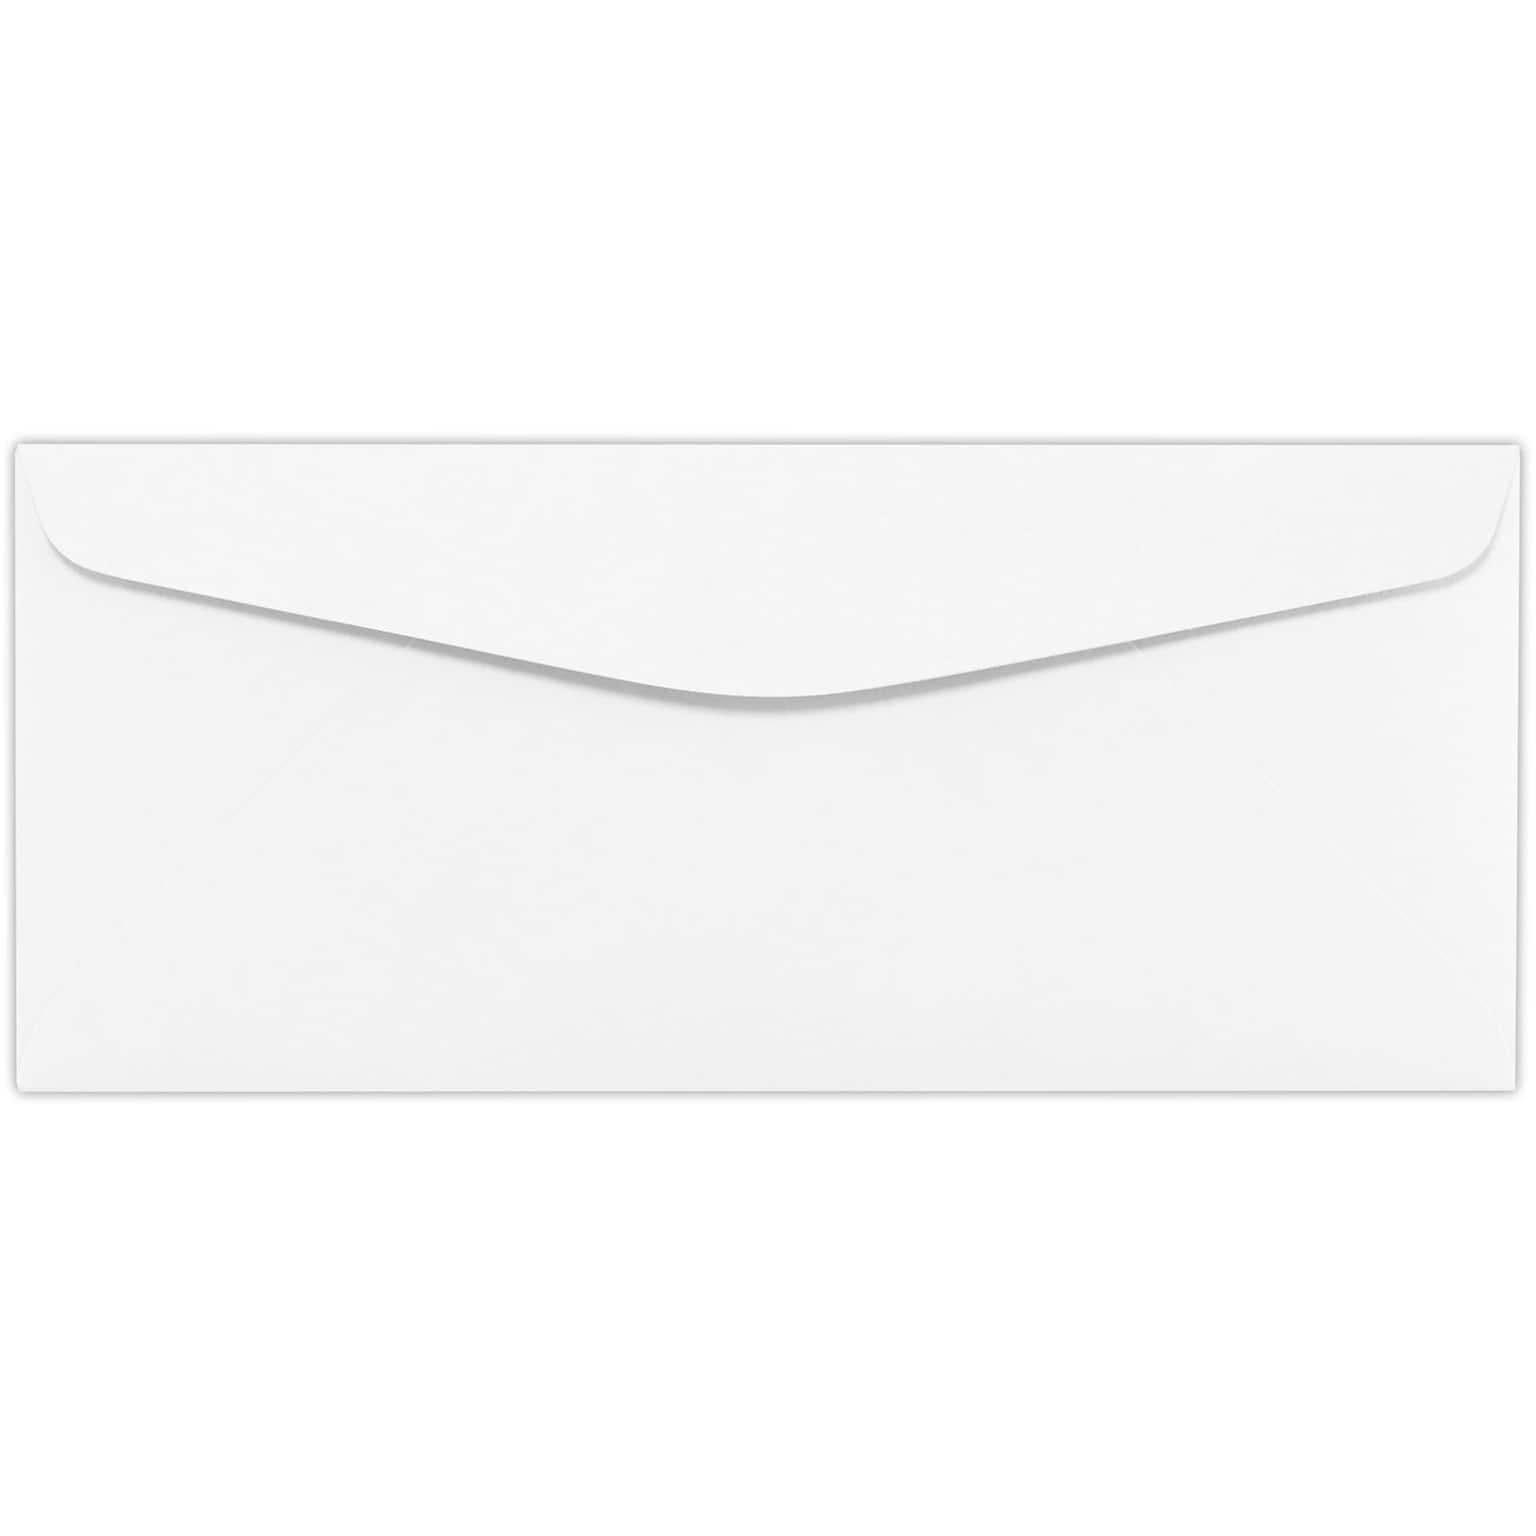 LUX #10 Regular Envelopes (4 1/8 x 9 1/2) 250/Pack, 28lb. White (10R-28W-250)